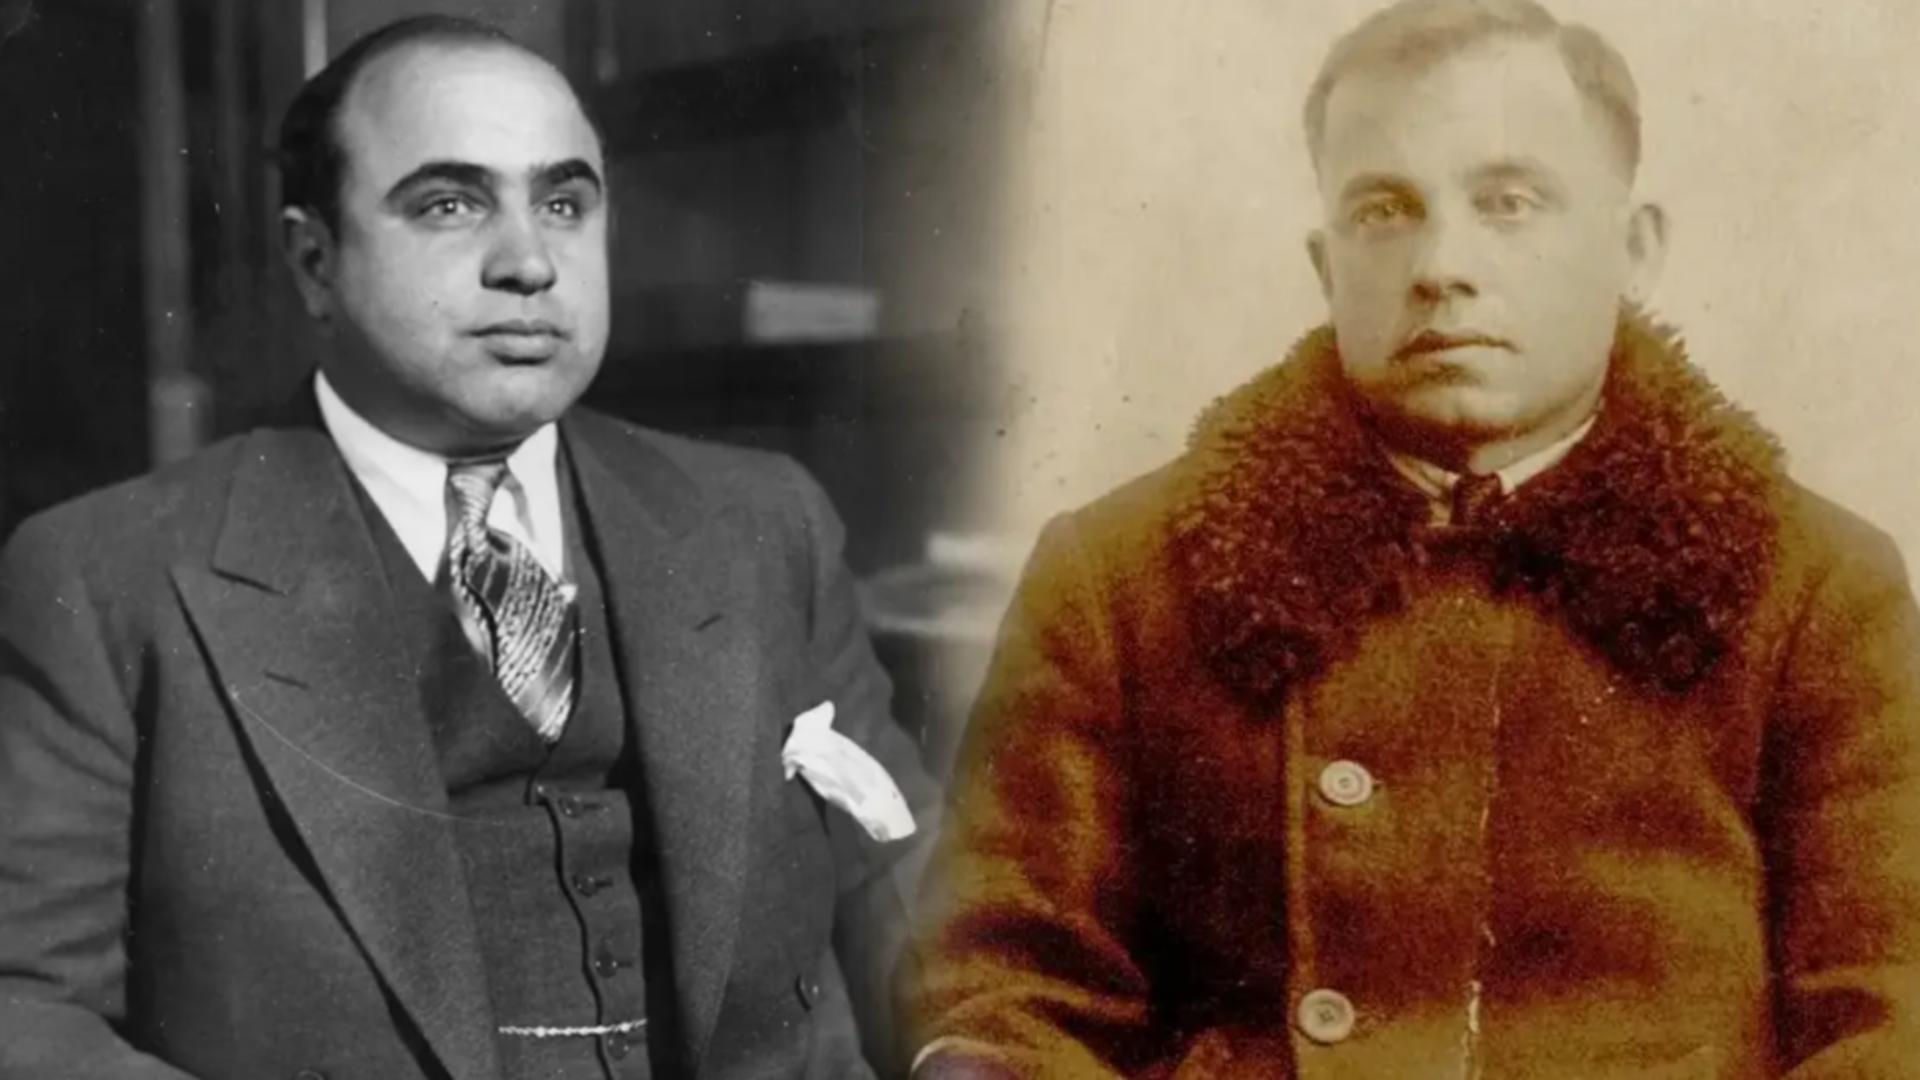 A fost șoferul lui Al Capone și traficant de top, dar s-a întors în România și s-a făcut PRIMAR